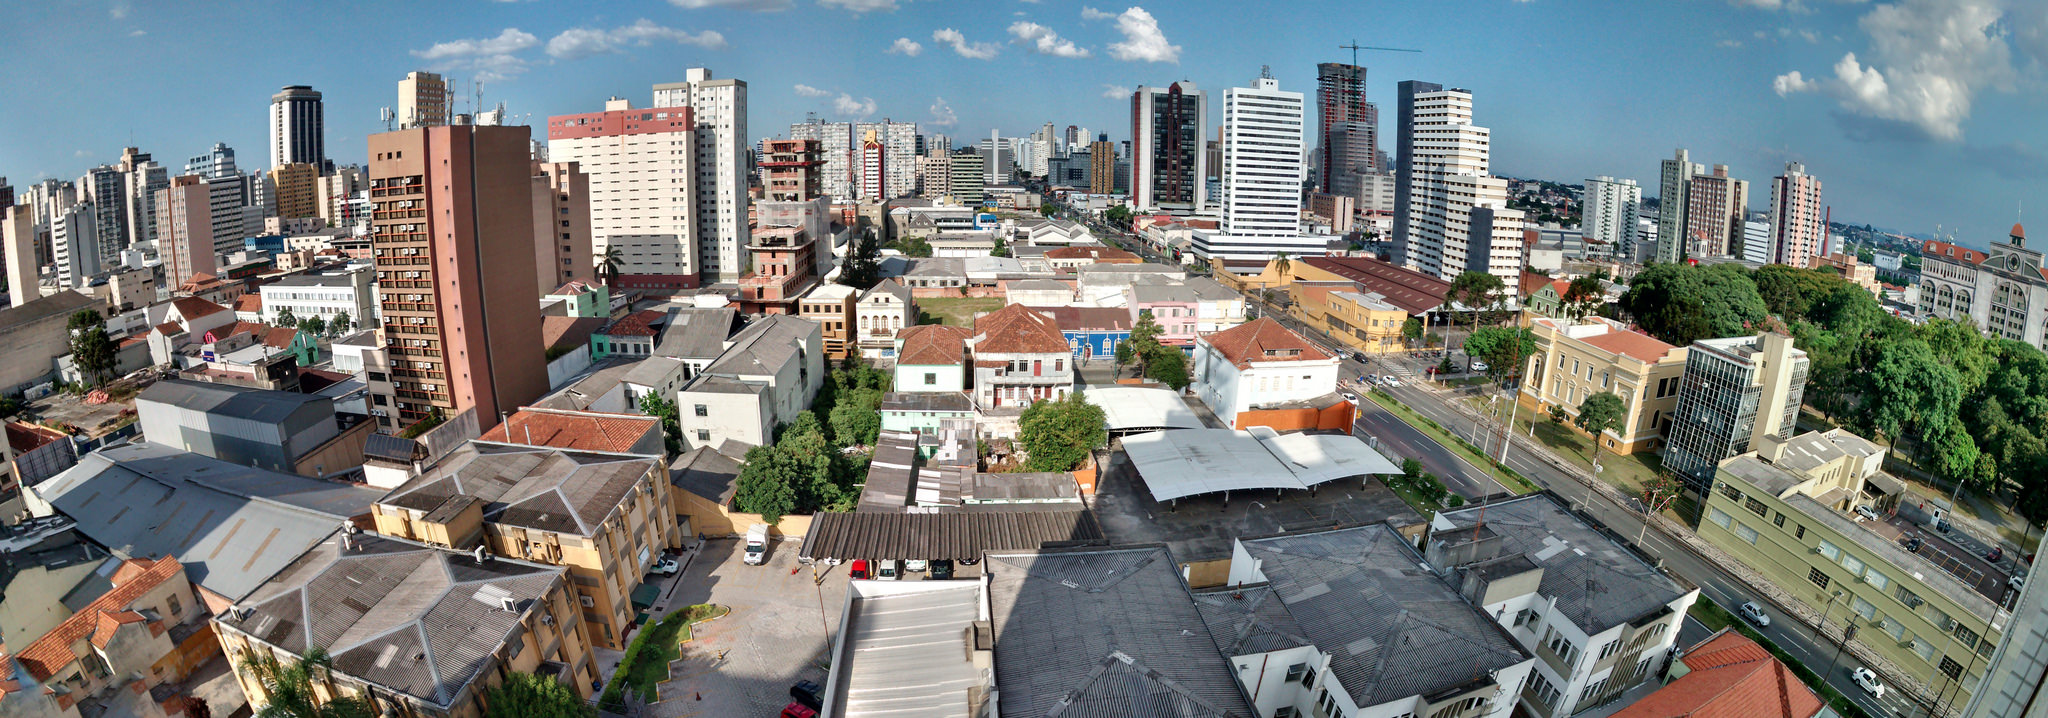 Programa de locação social para população em situação de rua prevê destinação de imóveis em áreas centrais. (foto: Cleber Rech)